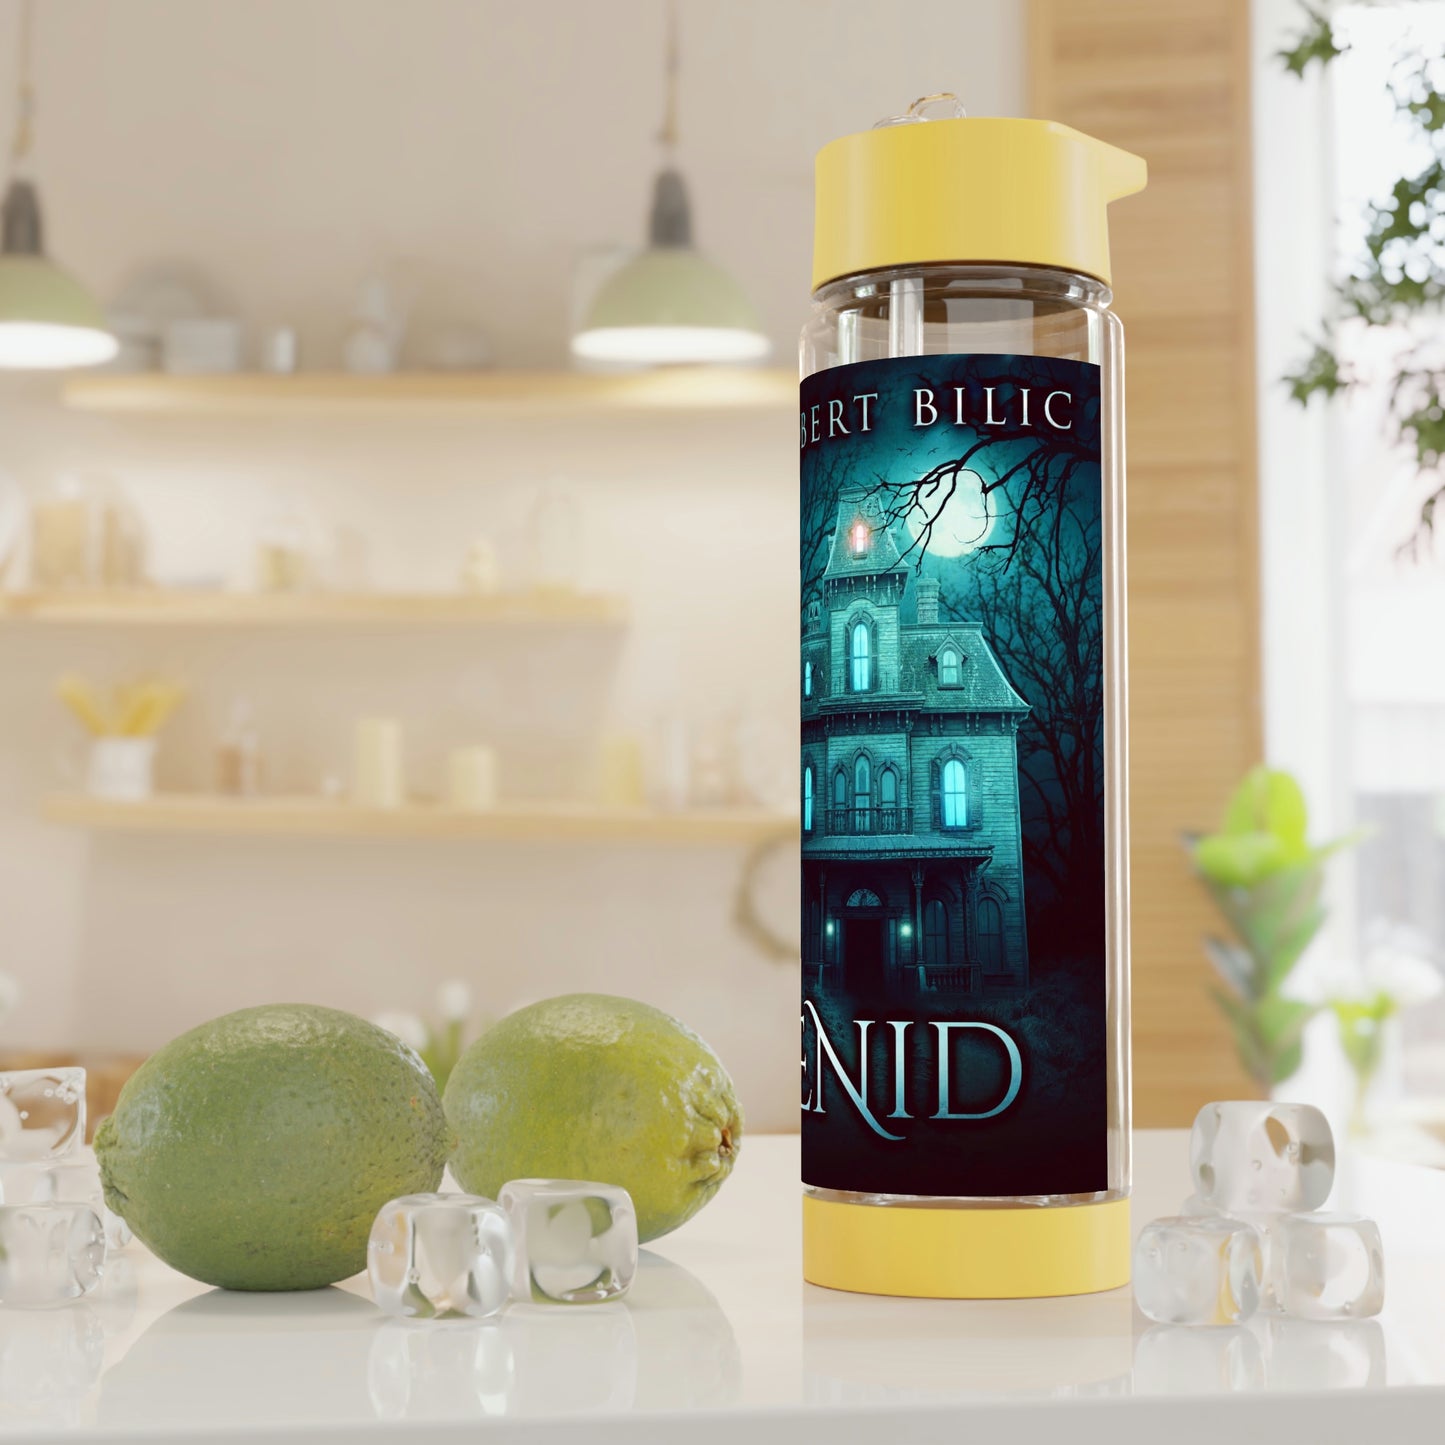 Enid - Infuser Water Bottle